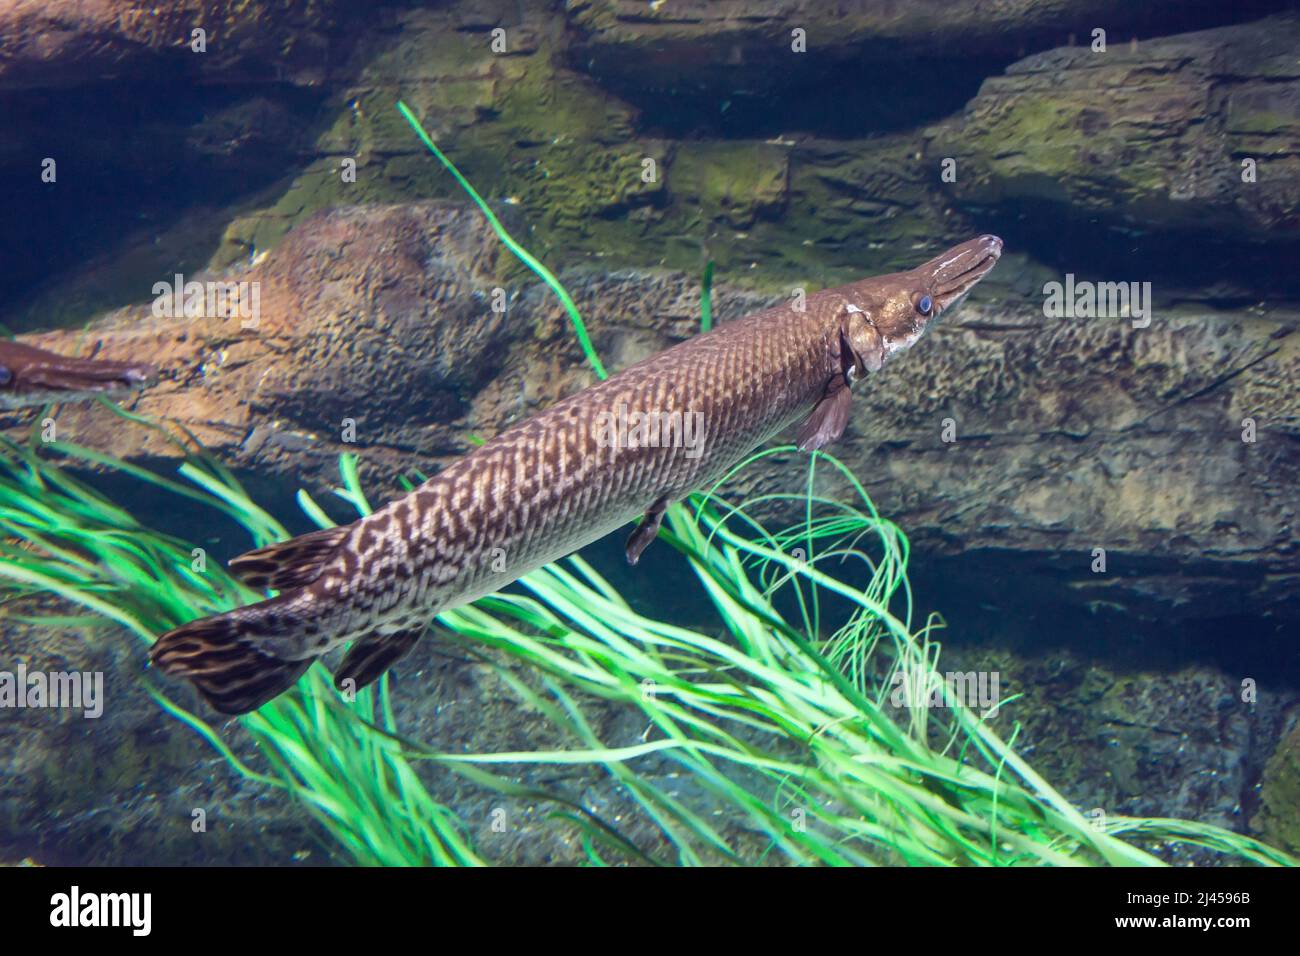 Fish Longnose Gar swims in an aquarium among algae Stock Photo